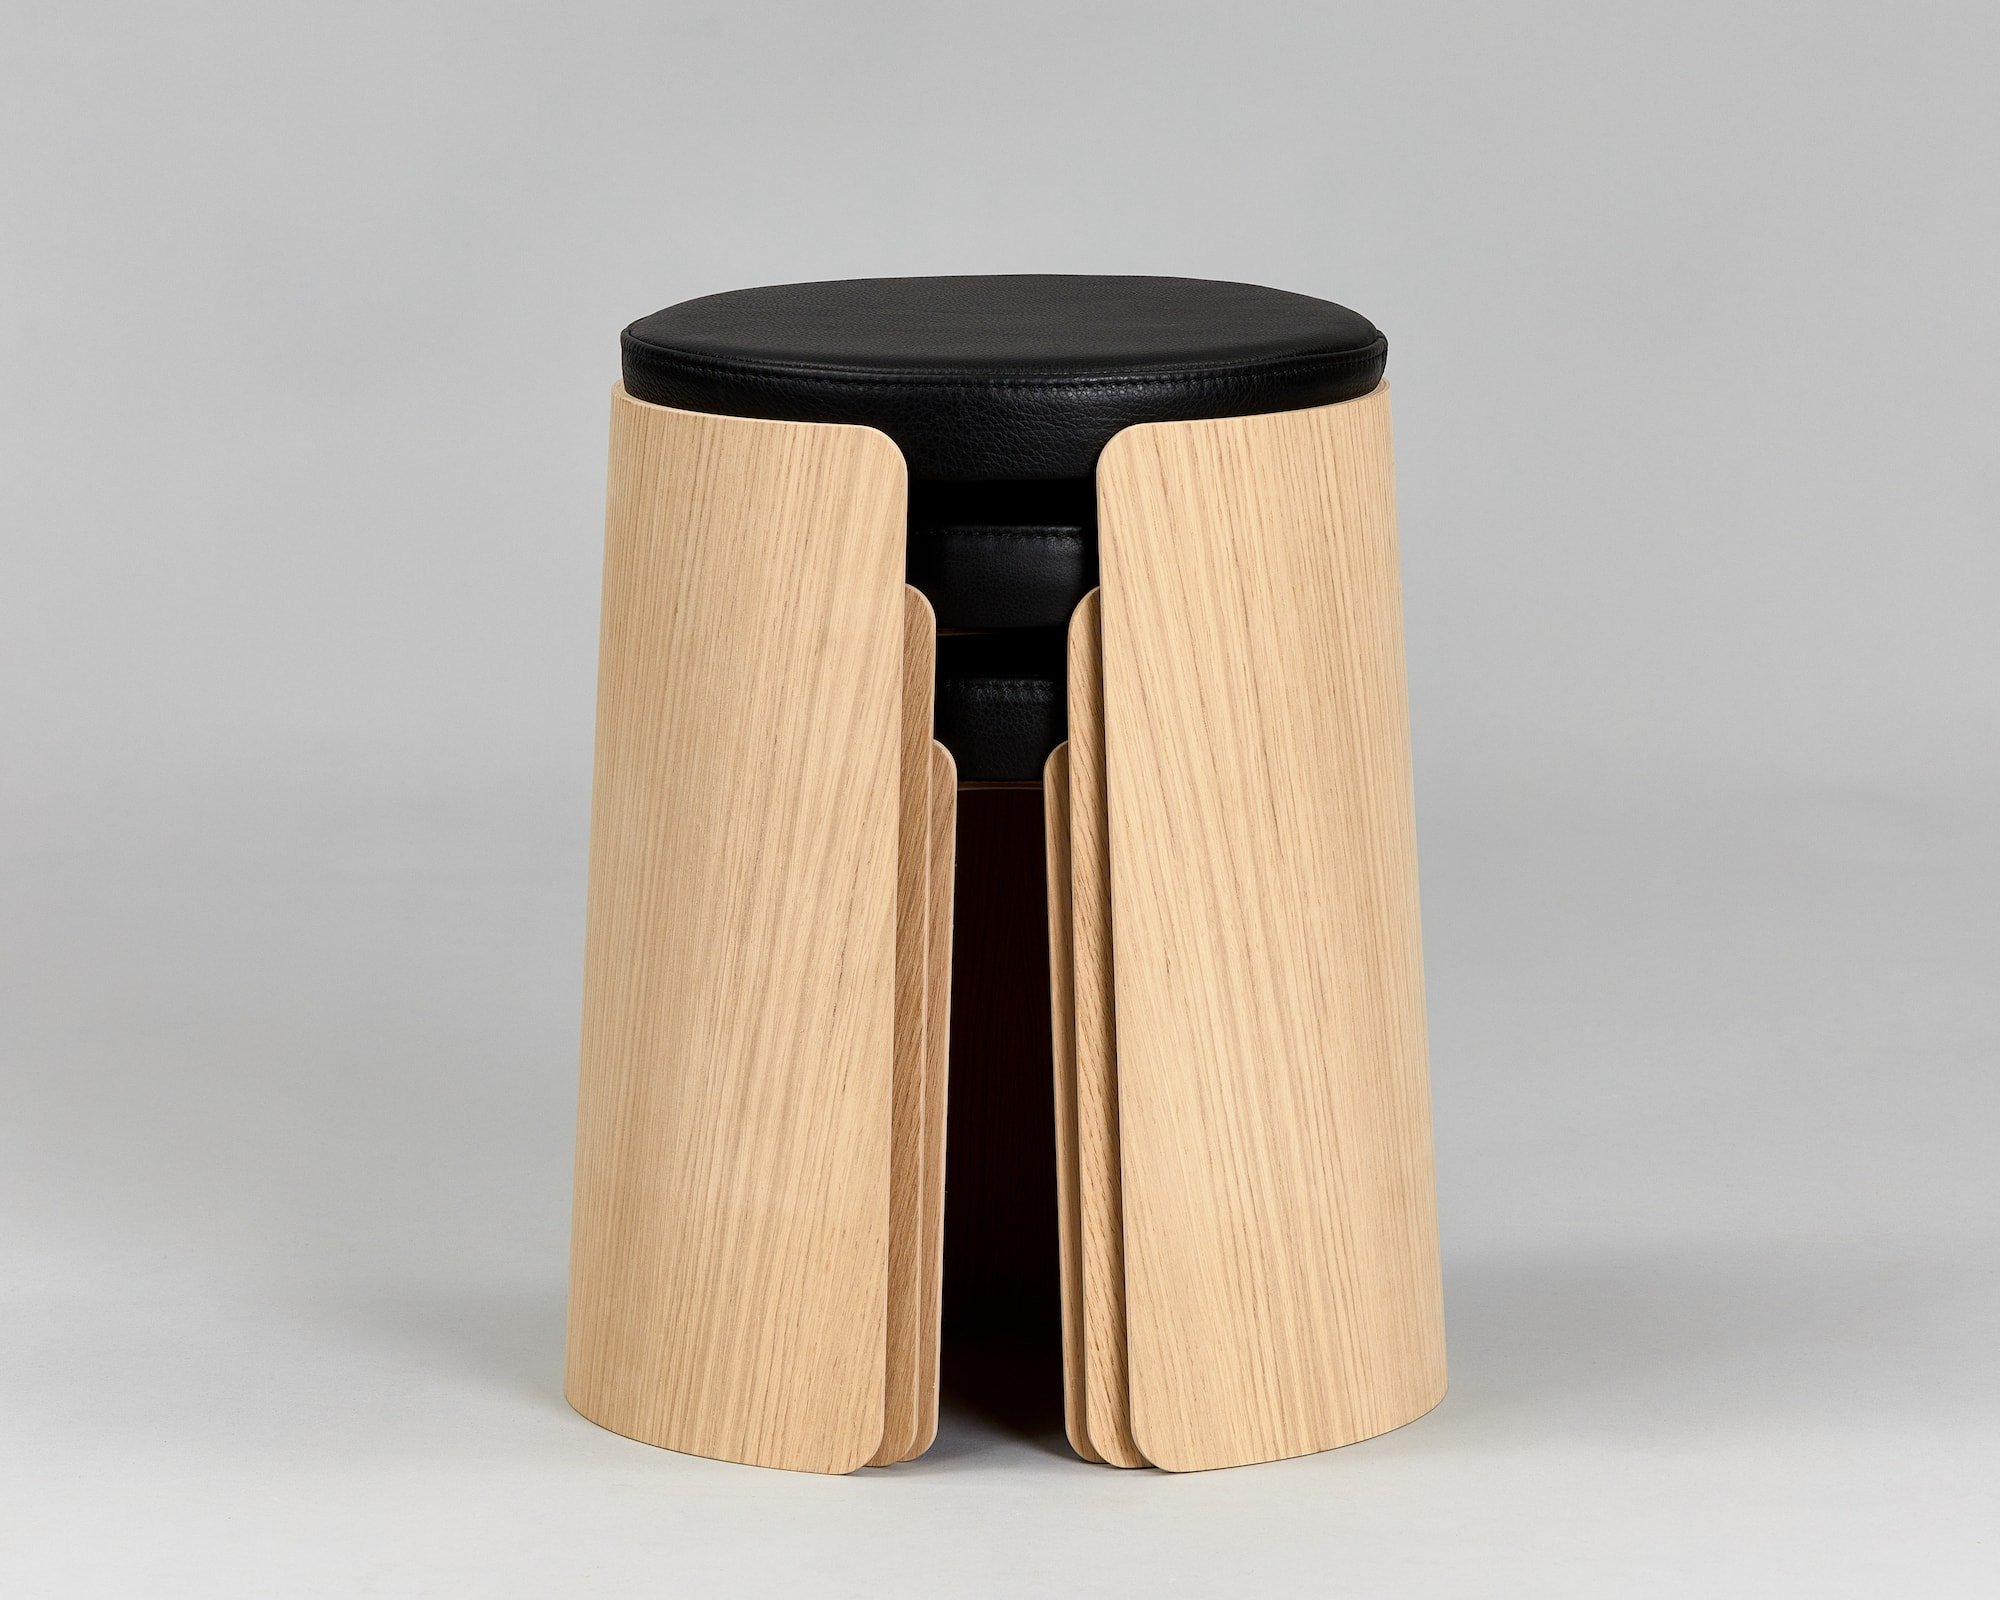 Designerstole i egetræ - sæt med 3 størrelser. sort sæde